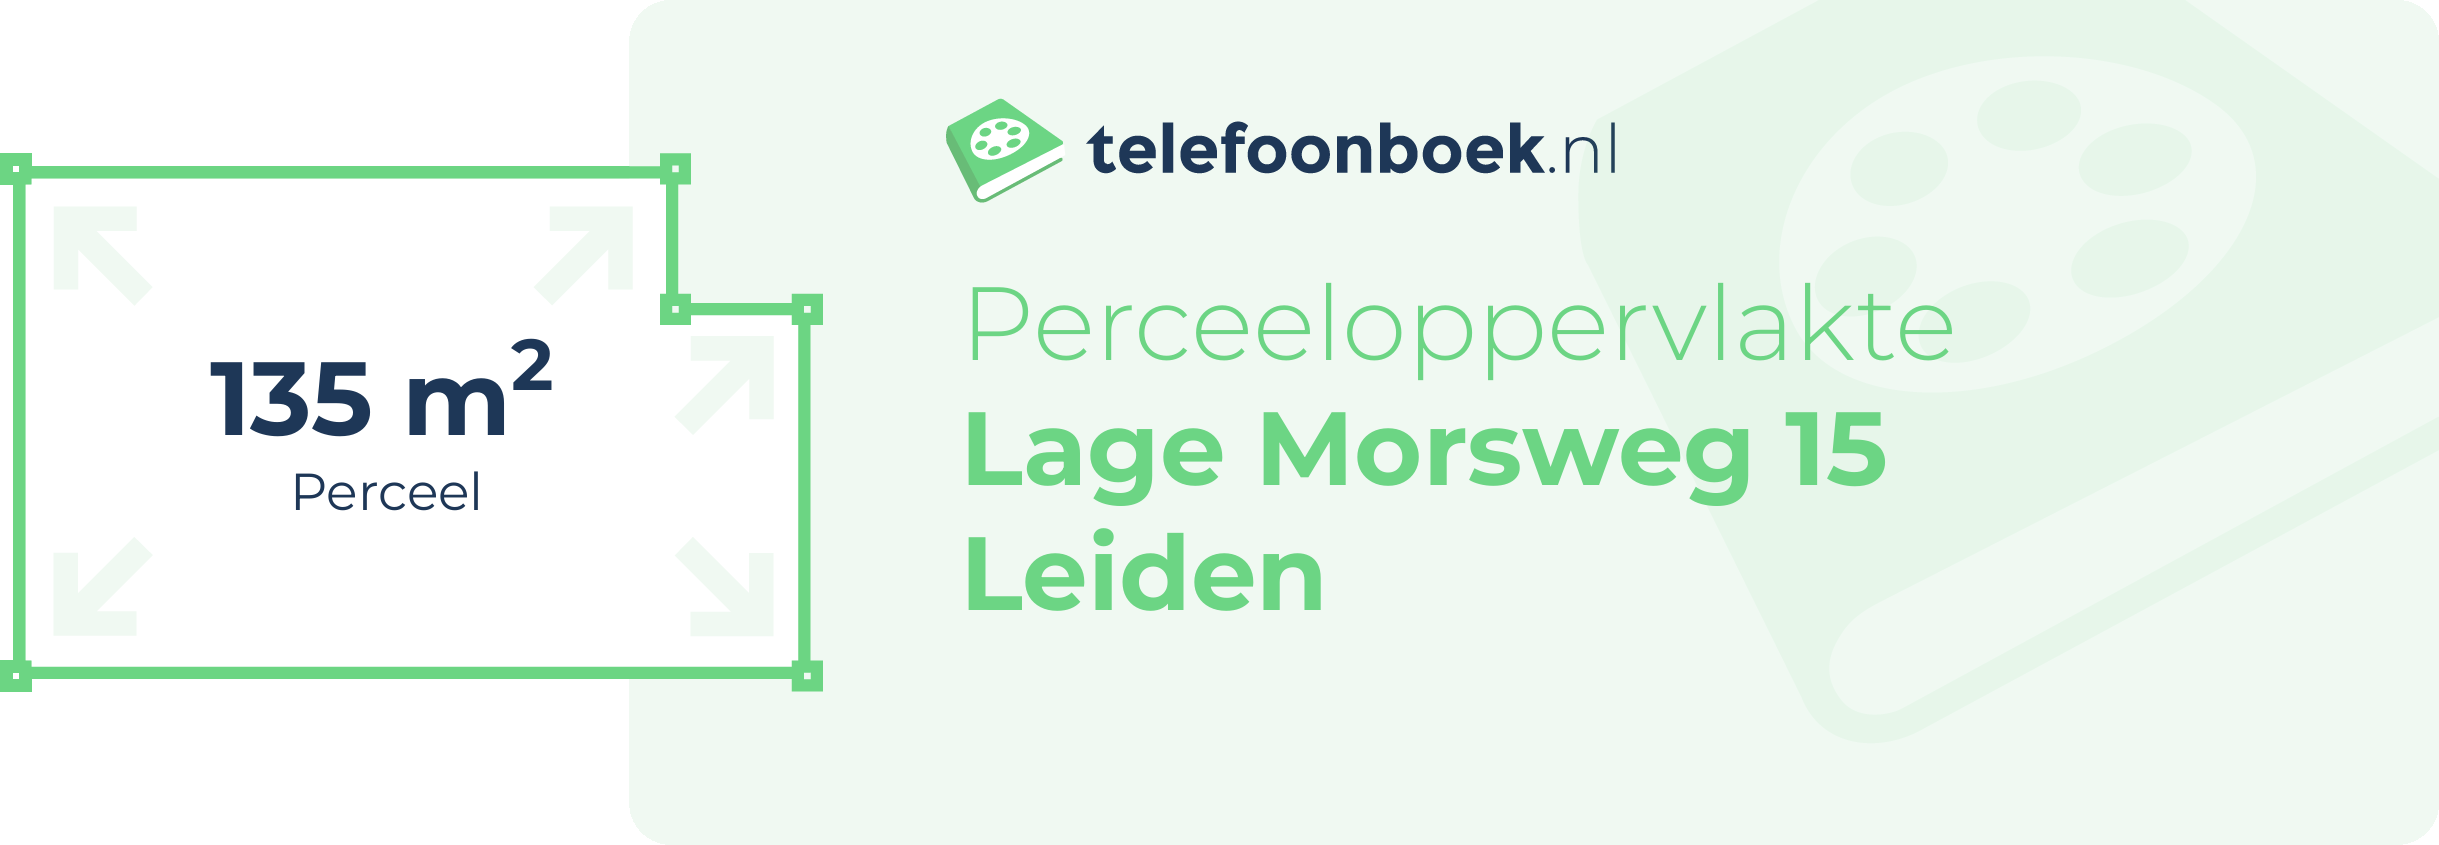 Perceeloppervlakte Lage Morsweg 15 Leiden